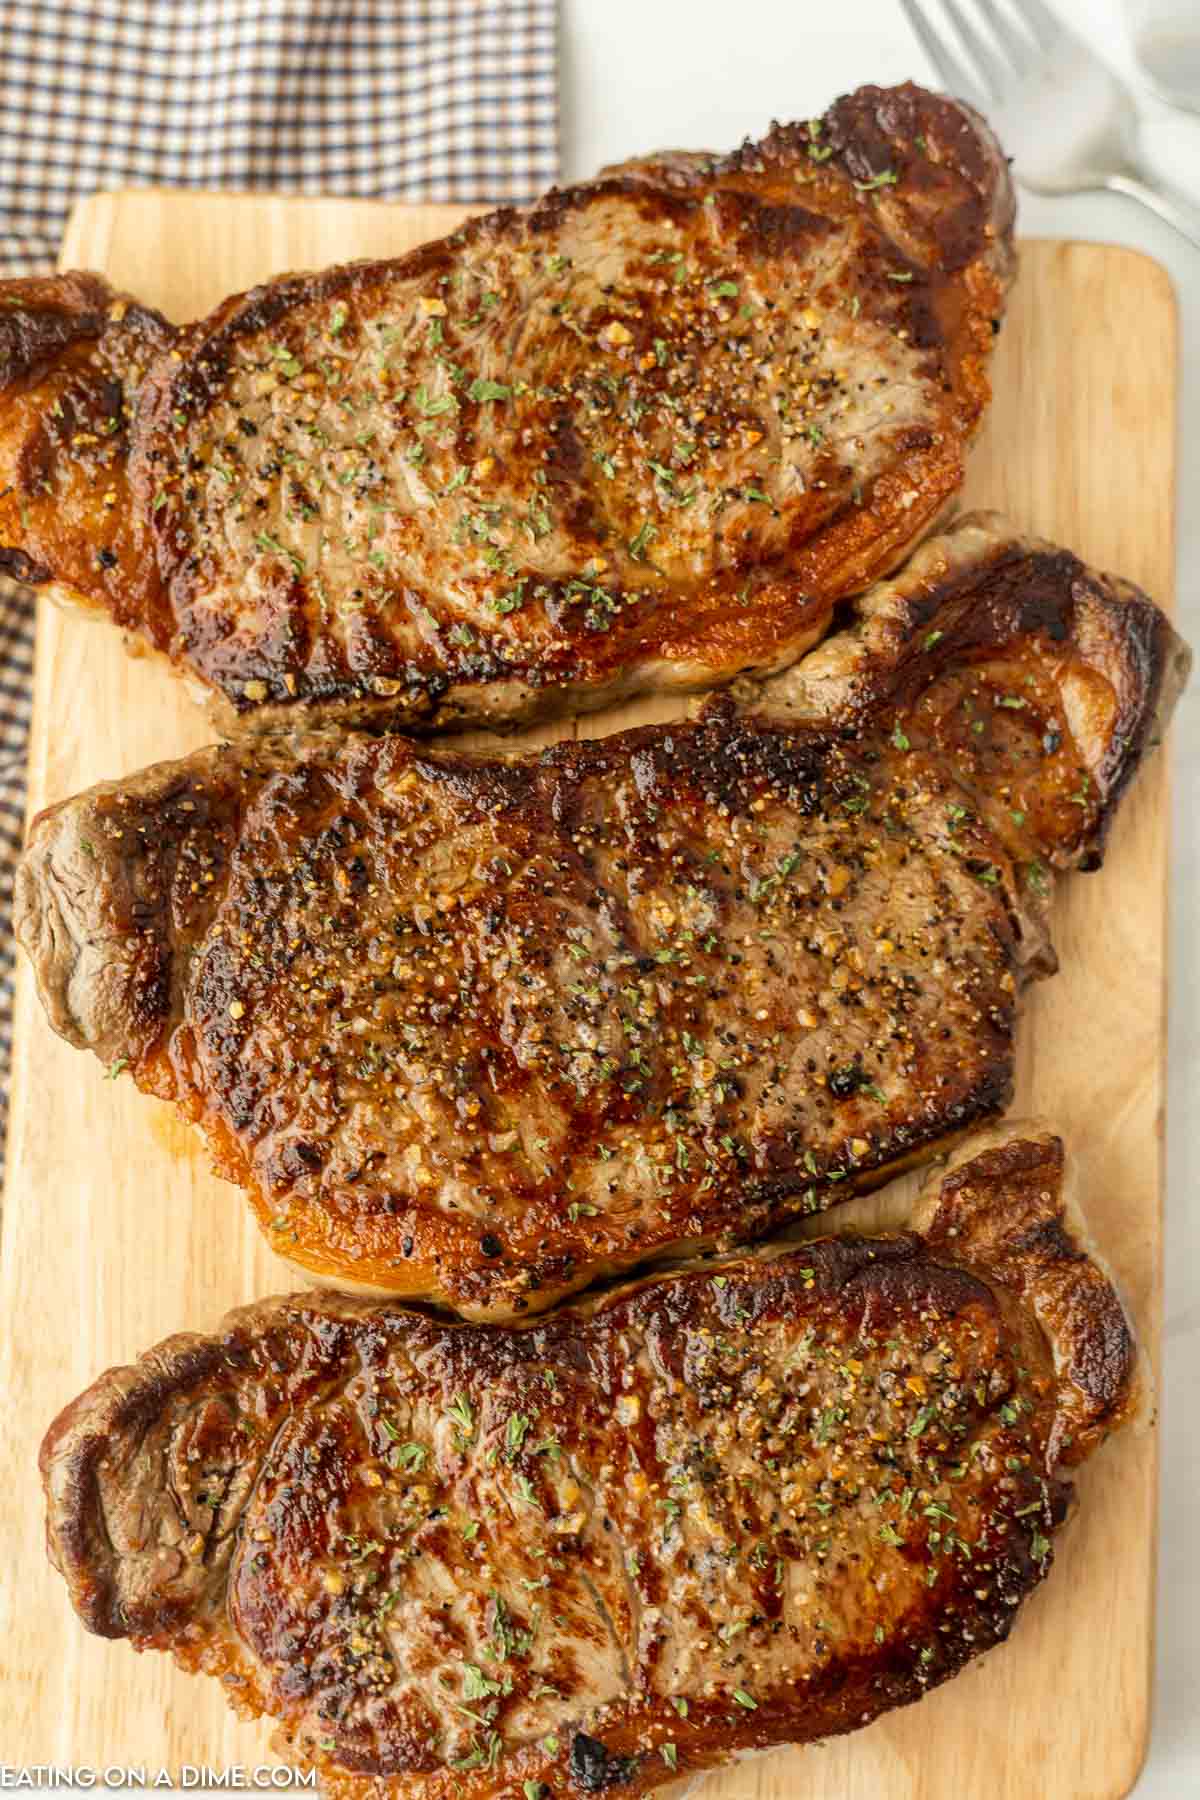 https://www.eatingonadime.com/wp-content/uploads/2022/06/steak-on-griddle-7.jpg